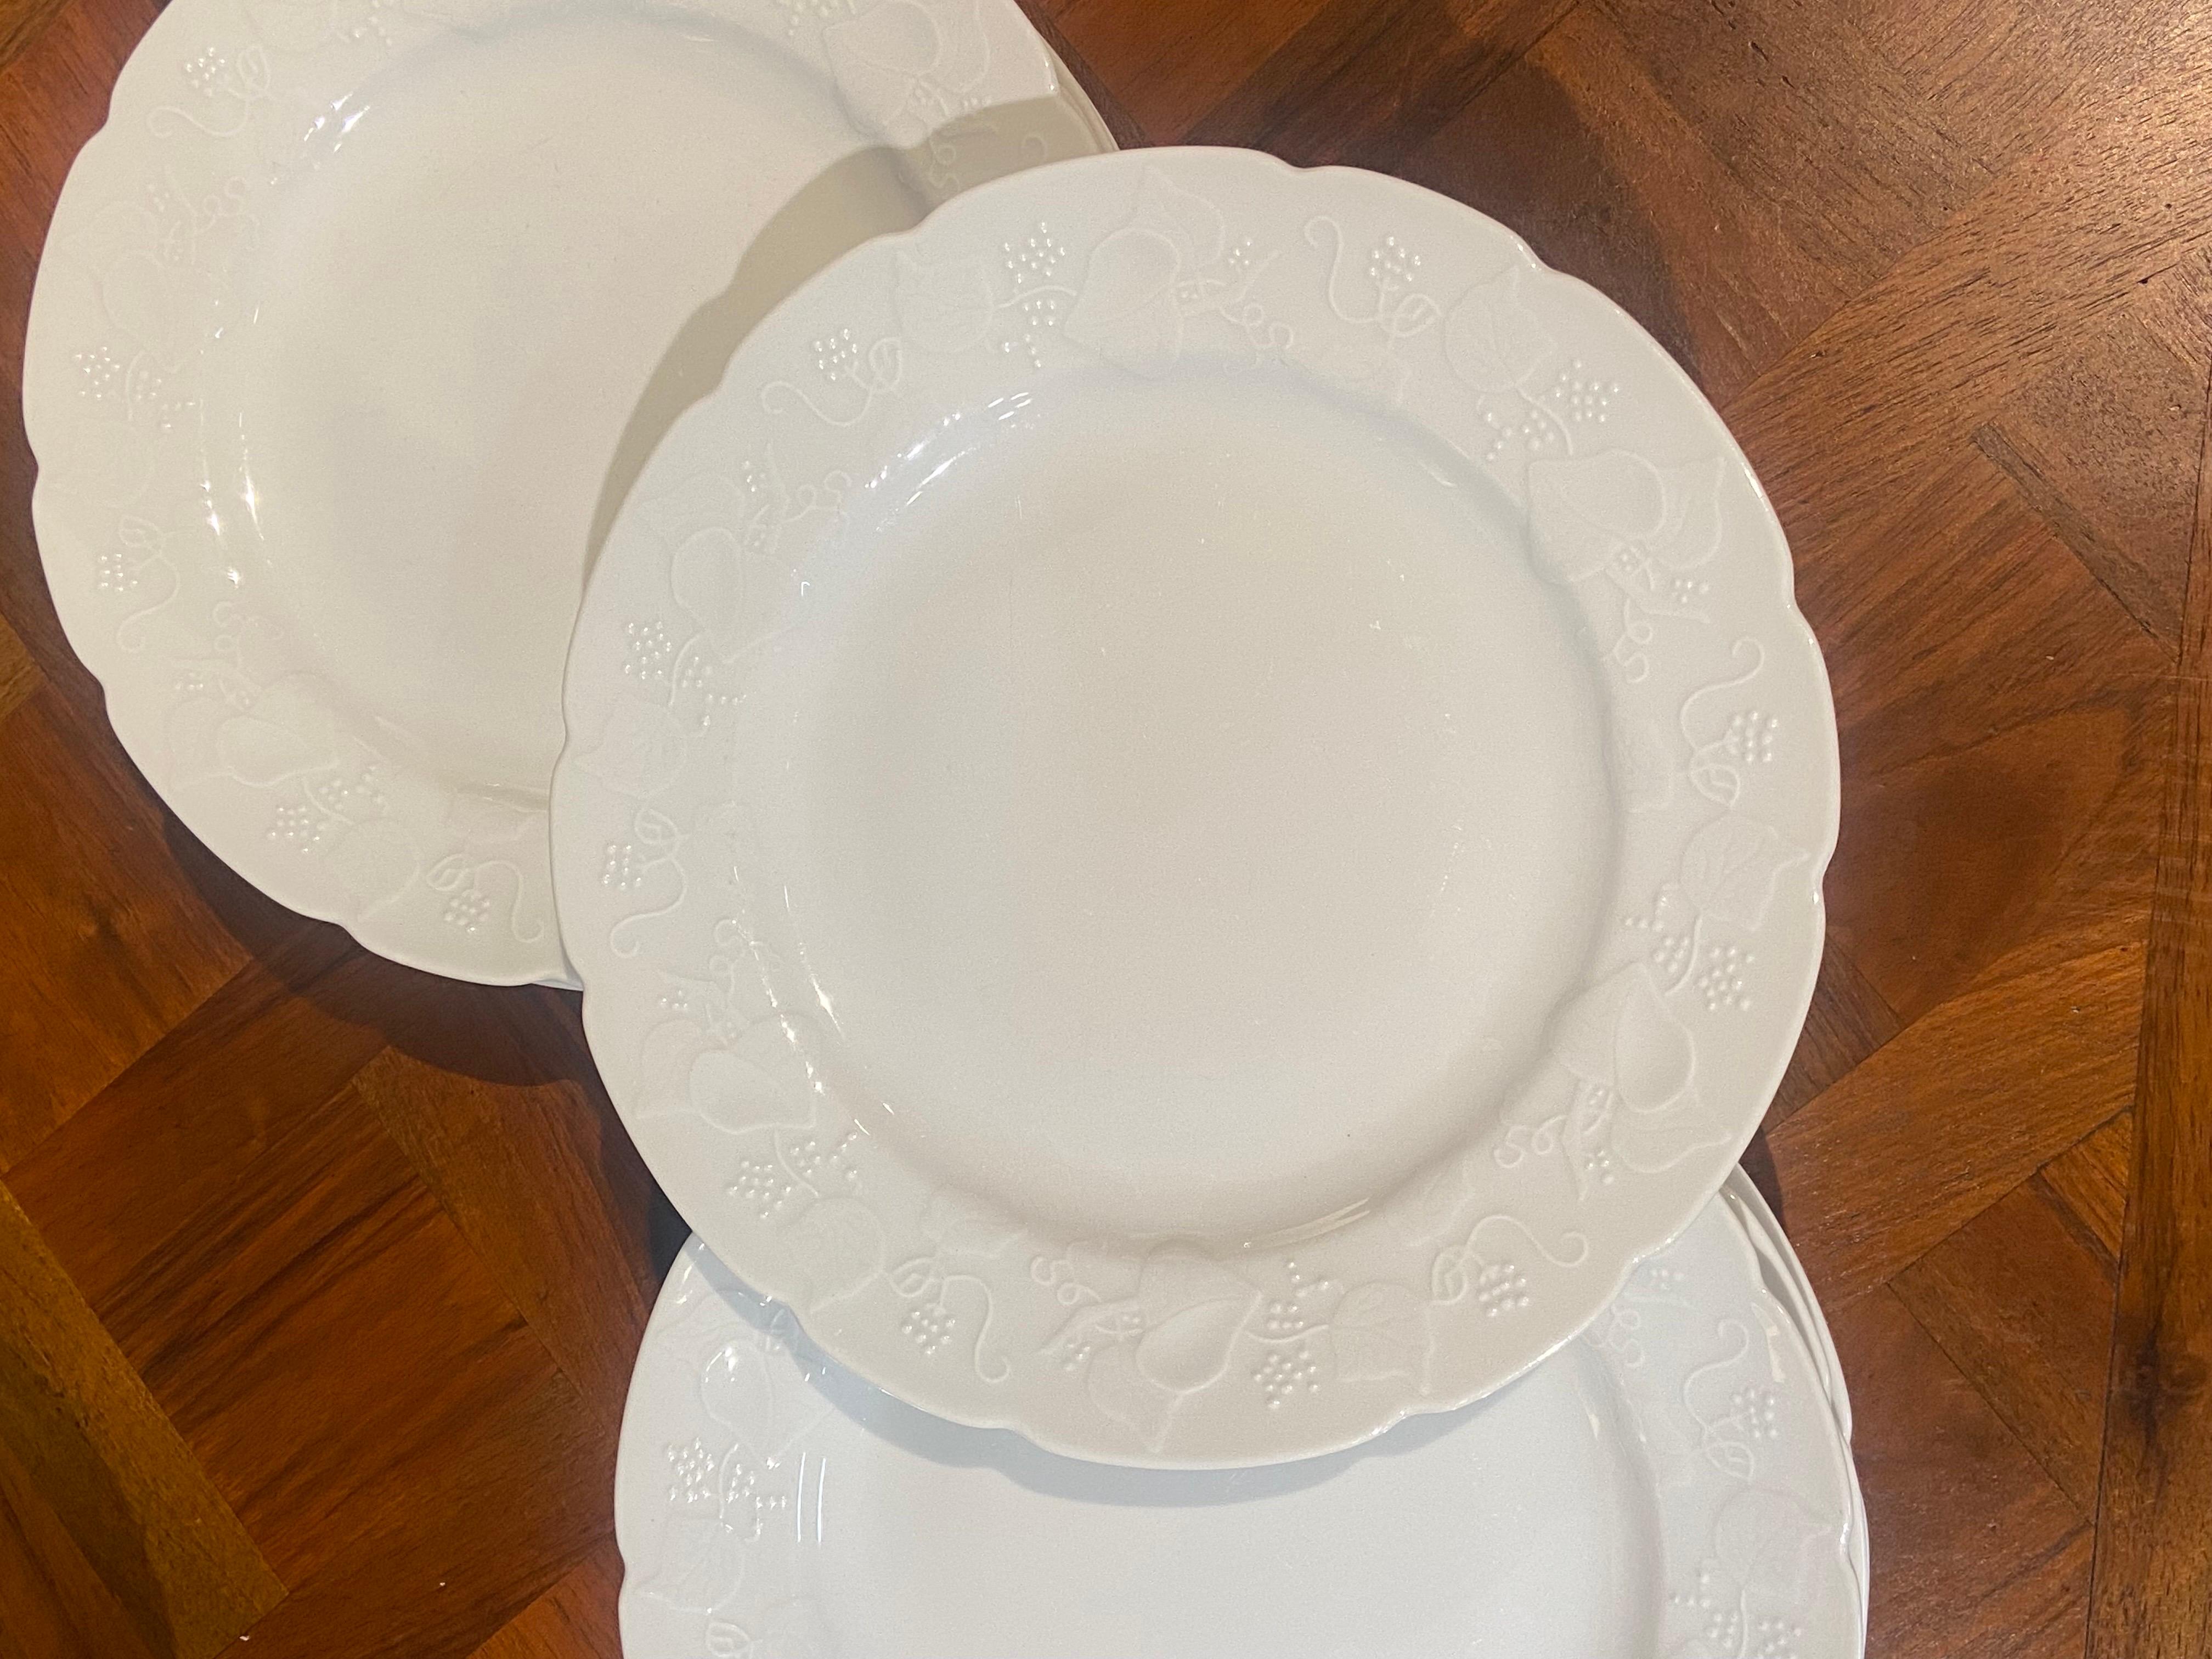 Ensemble de onze assiettes plates de Lierre Sauvage CNP en céramique blanc cassé avec de jolies décorations.
